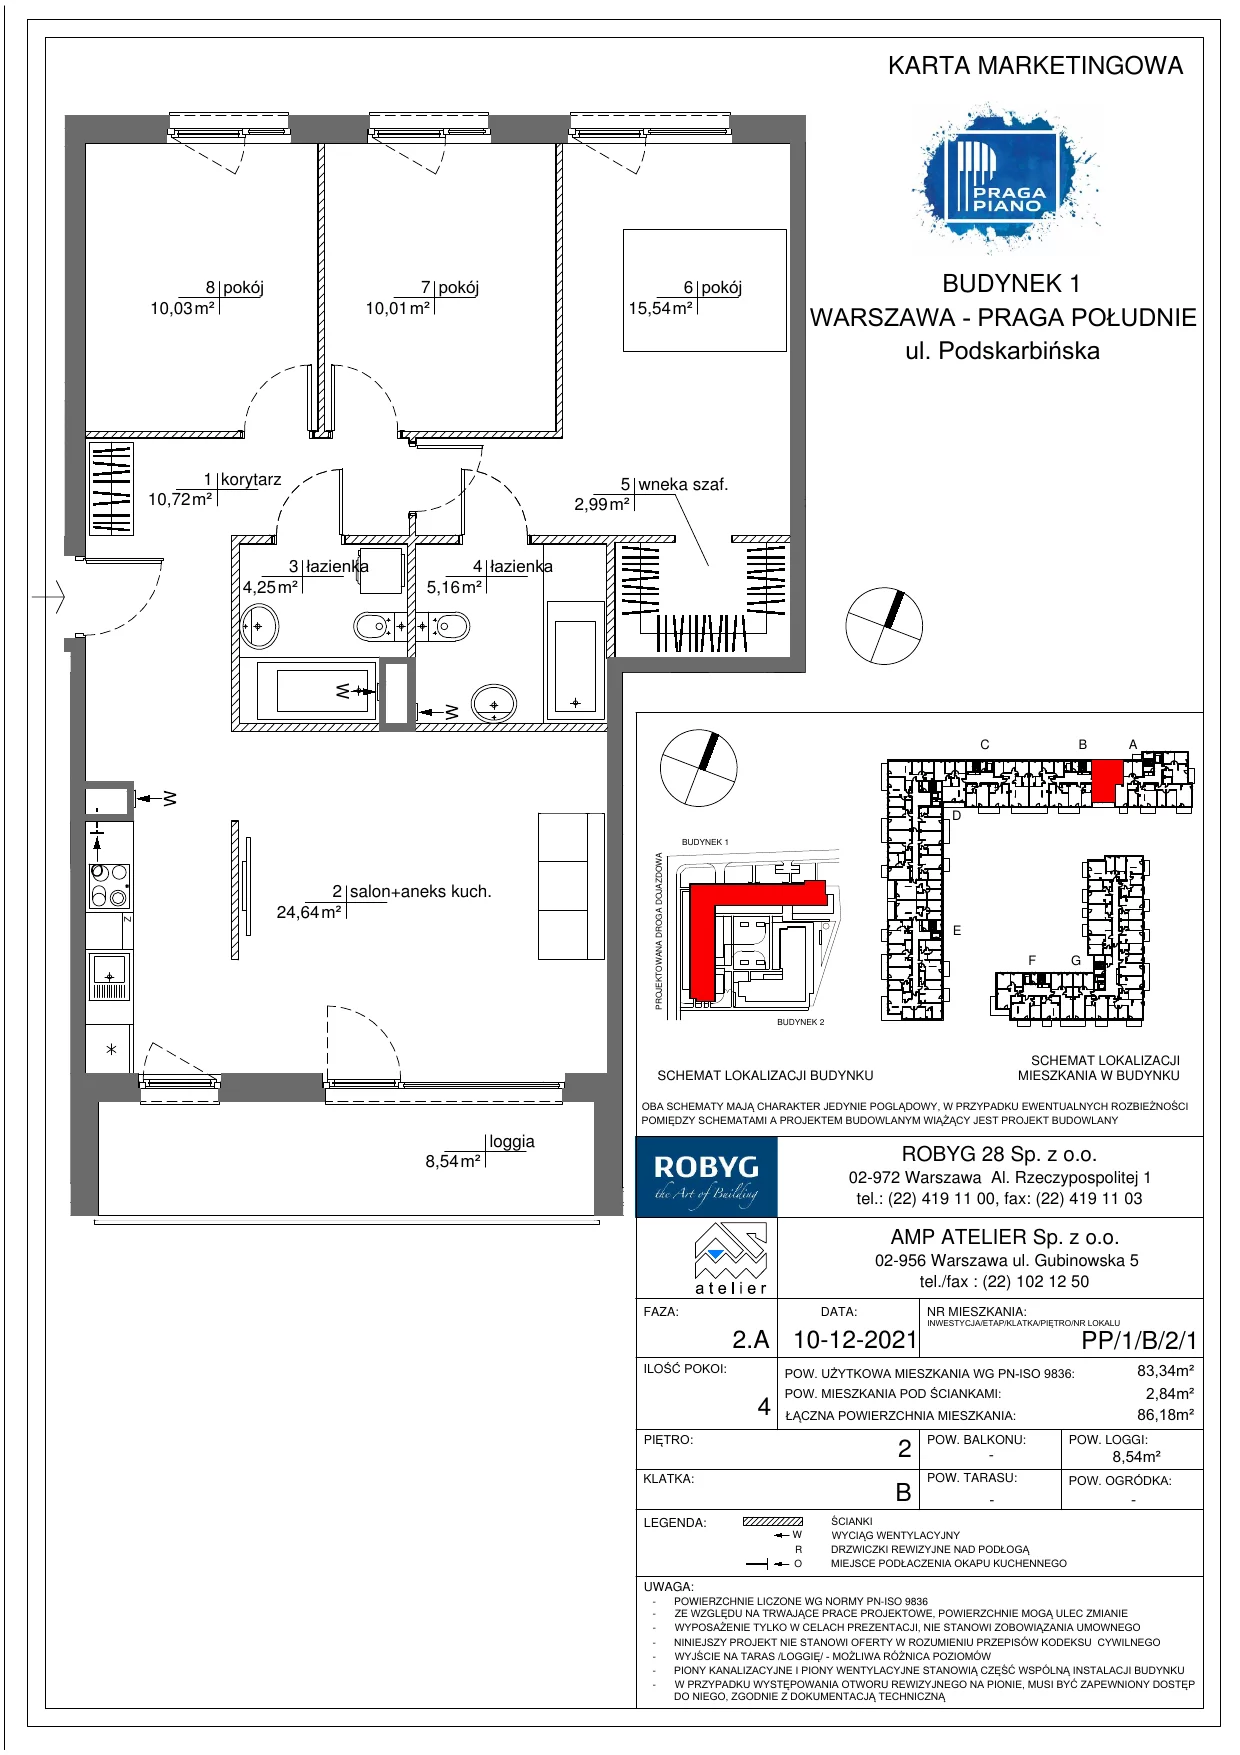 Mieszkanie 83,34 m², piętro 2, oferta nr PP/1/B/2/1, Praga Piano, Warszawa, Praga Południe, Kamionek, ul. Podskarbińska